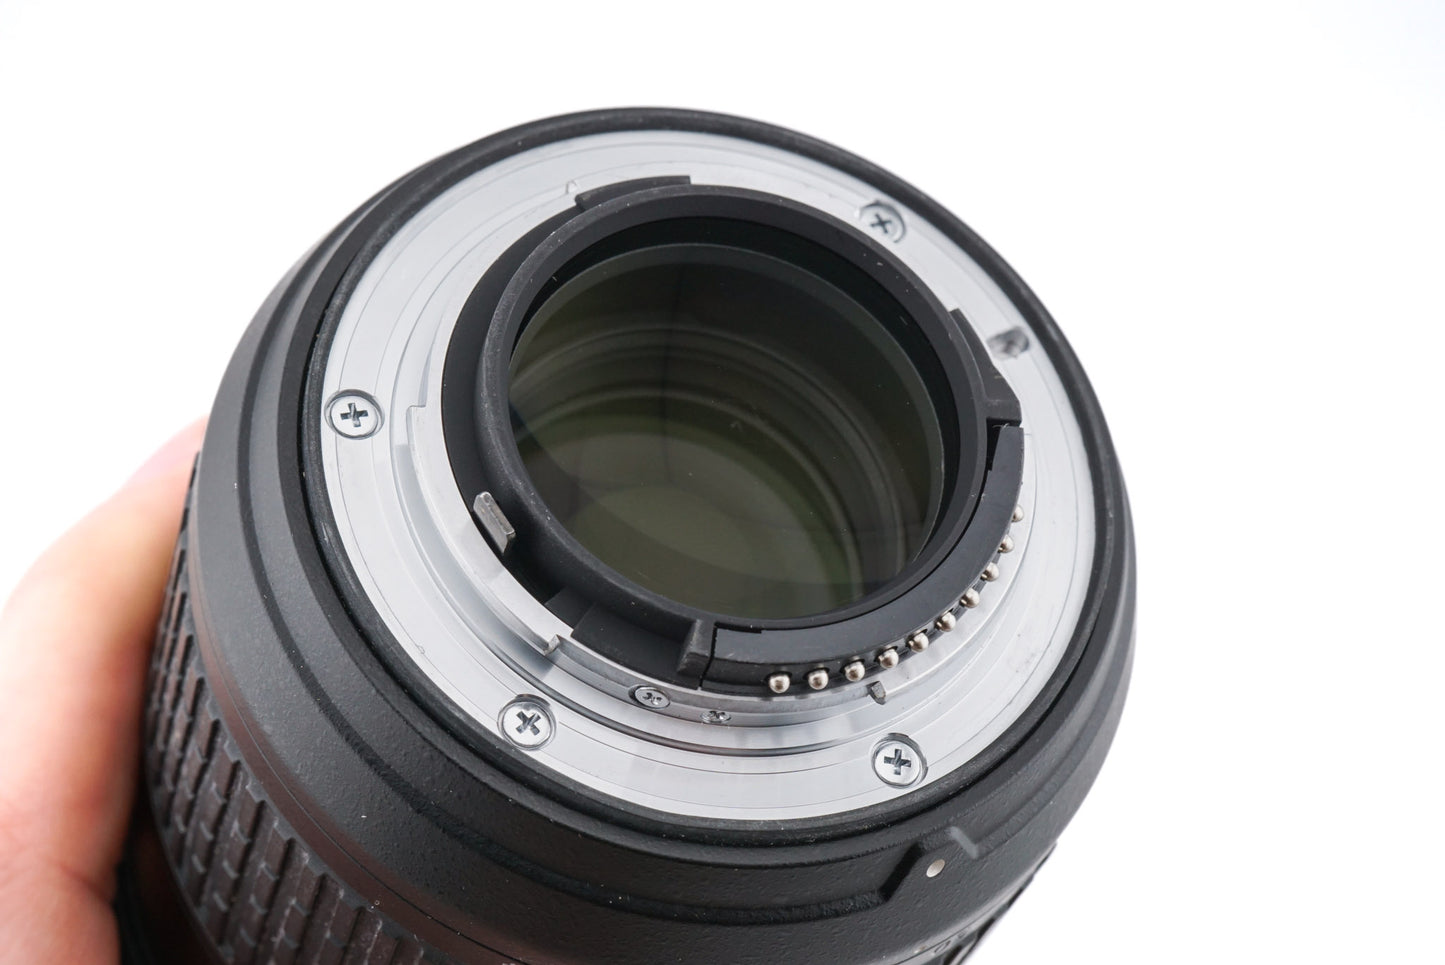 Nikon 24-70mm f2.8 G ED AF-S Nikkor